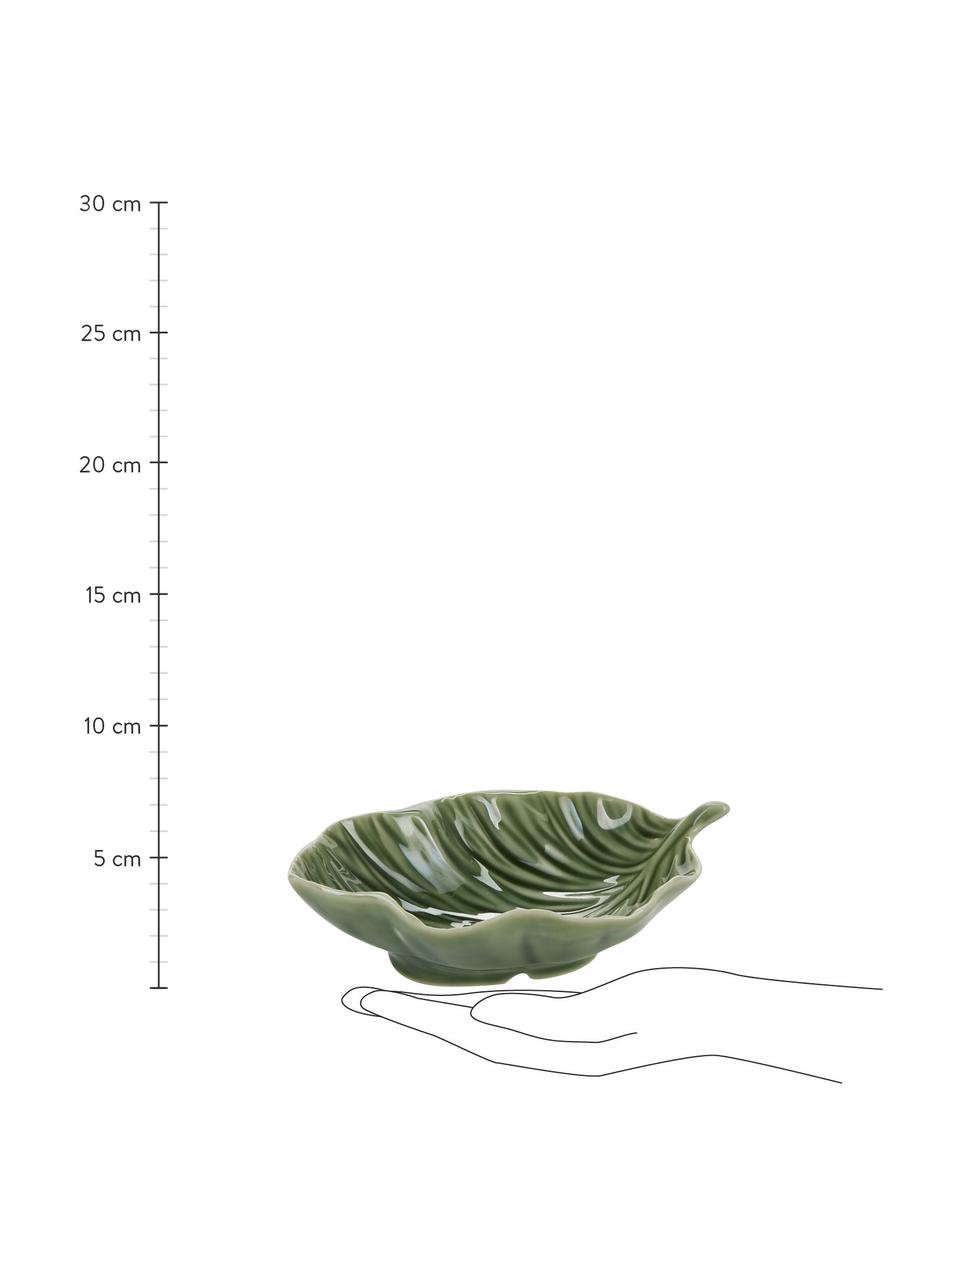 Porzellan-Servierschale Leaf in Grün, L 17 x B 13 cm, Porzellan, Grün, L 17 x B 13 cm